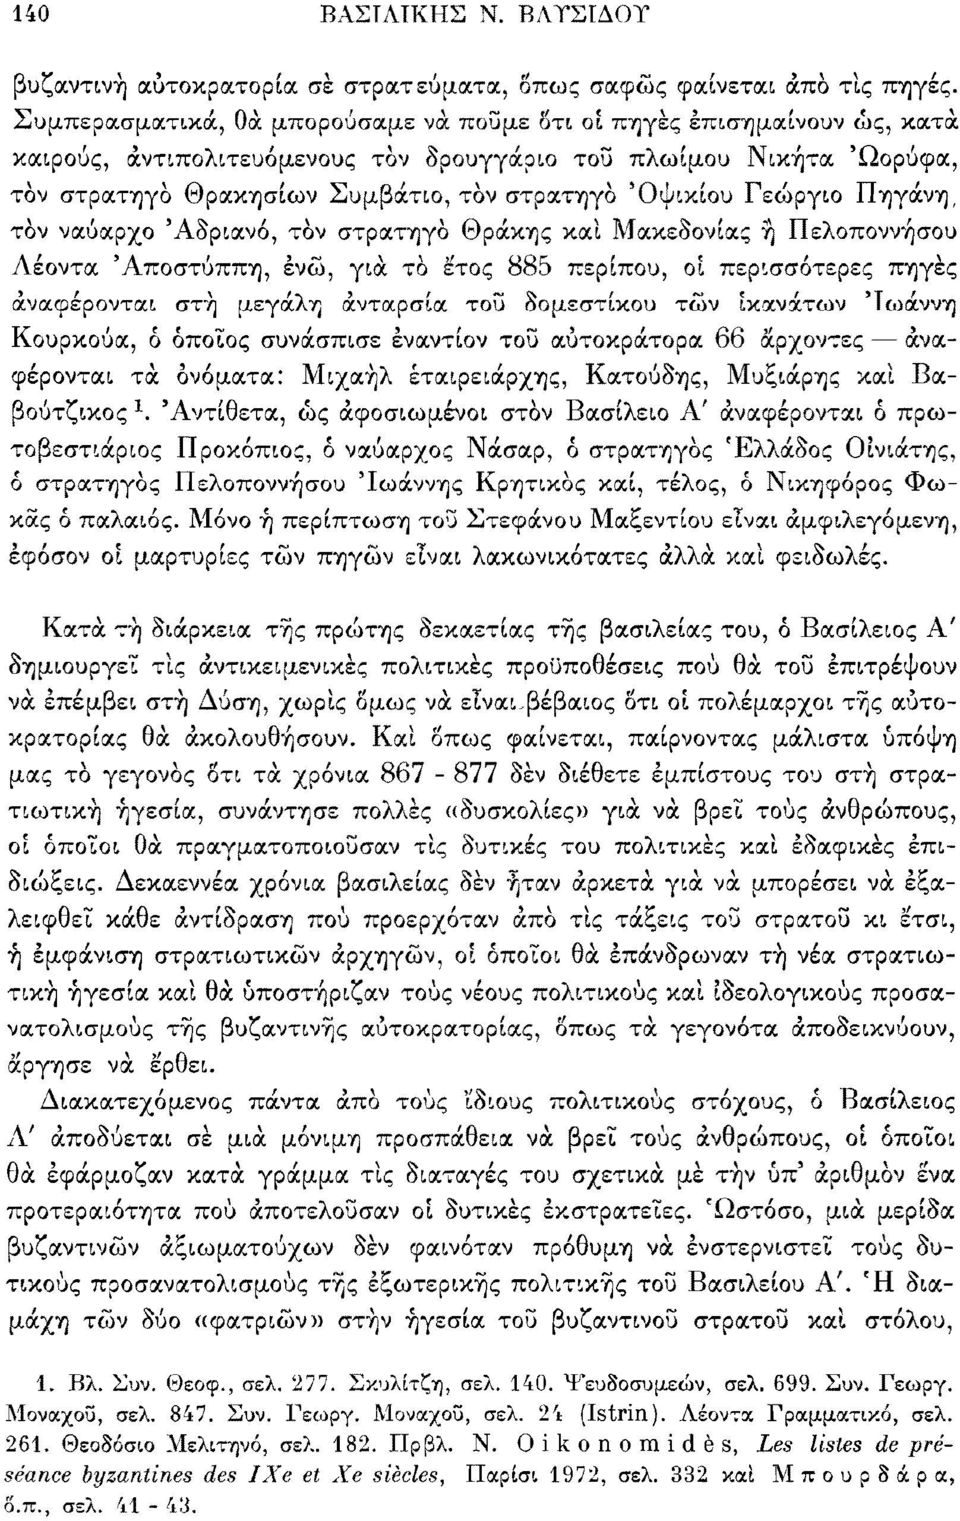 Γεώργιο Πηγάνη, τον ναύαρχο Αδριανό, τον στρατηγό Θράκης καί Μακεδονίας ή Πελοποννήσου Λέοντα Άποστύππη, ένώ, γιά το έτος 885 περίπου, οί περισσότερες πηγές αναφέρονται στή μεγάλη ανταρσία τοΰ